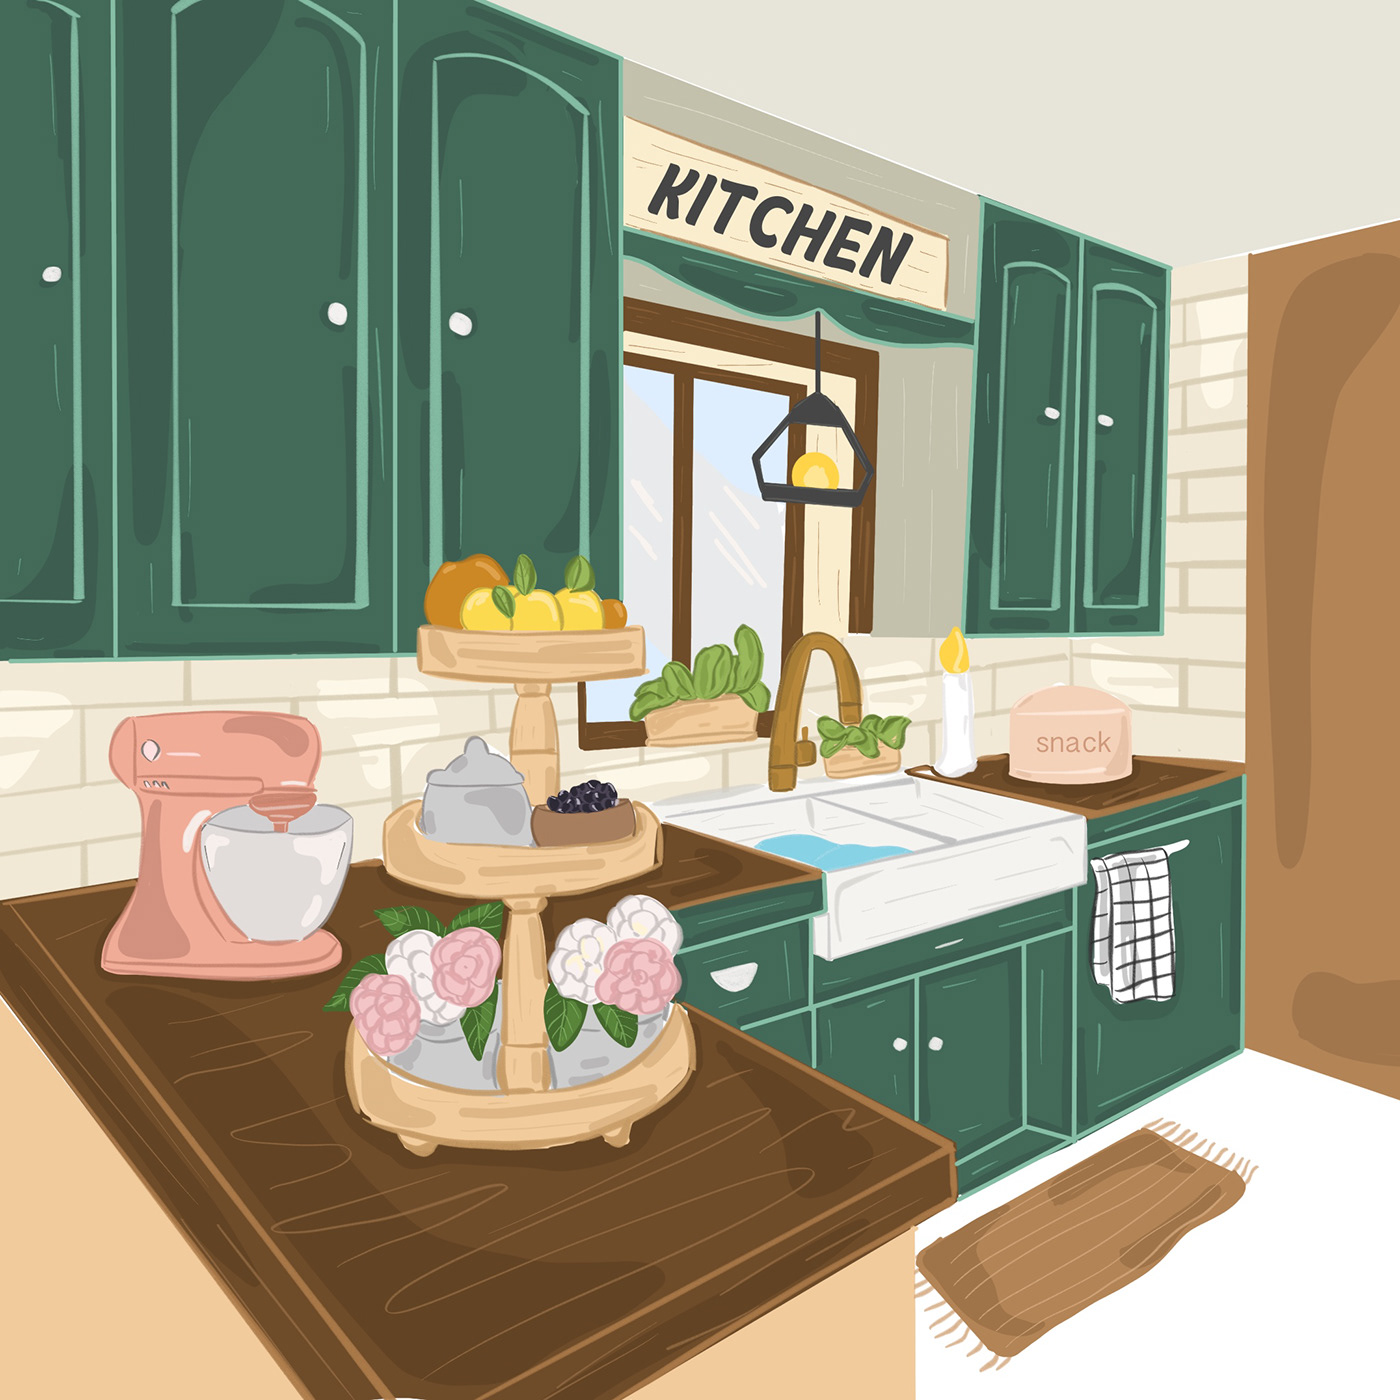 Sink kitchen artwork concept art